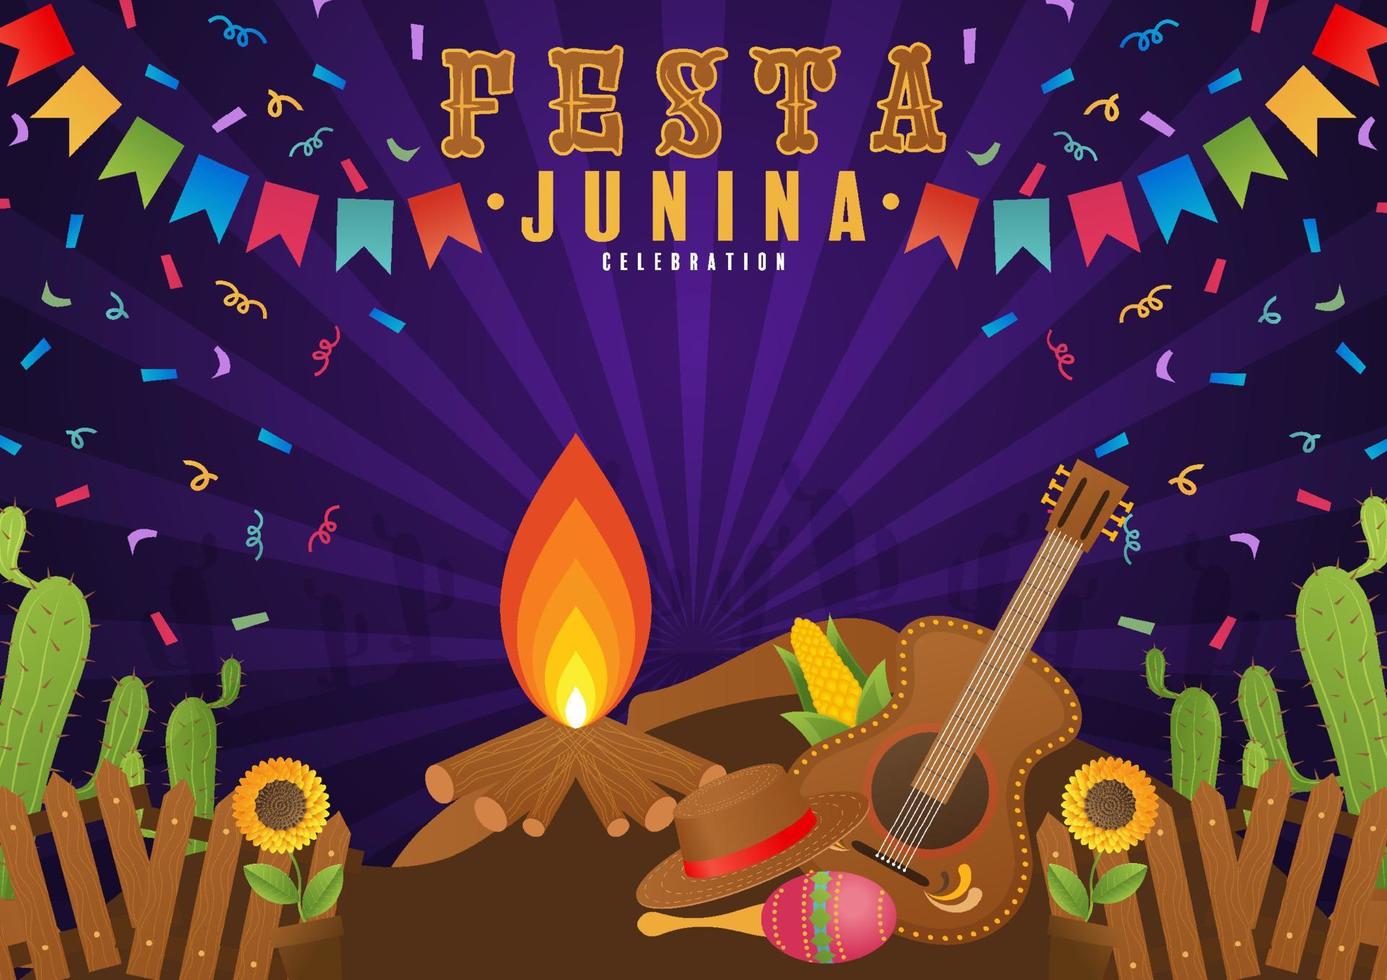 cartel de festa junina festival de junio. folclore vacación guitarra acordeón cactus verano girasol fogata. vector